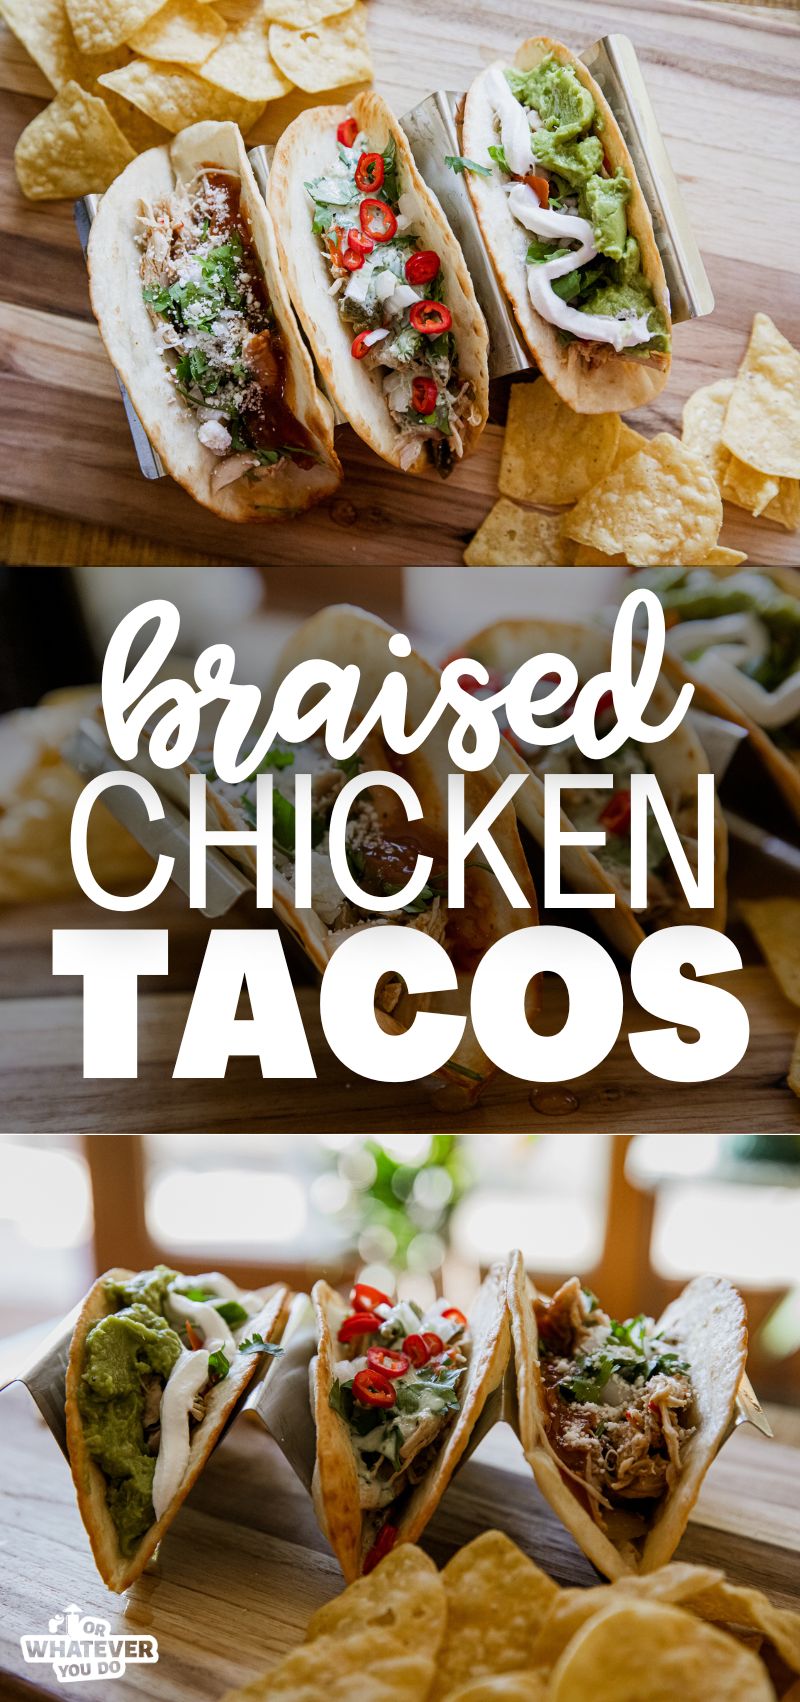 Braised Chicken Tacos